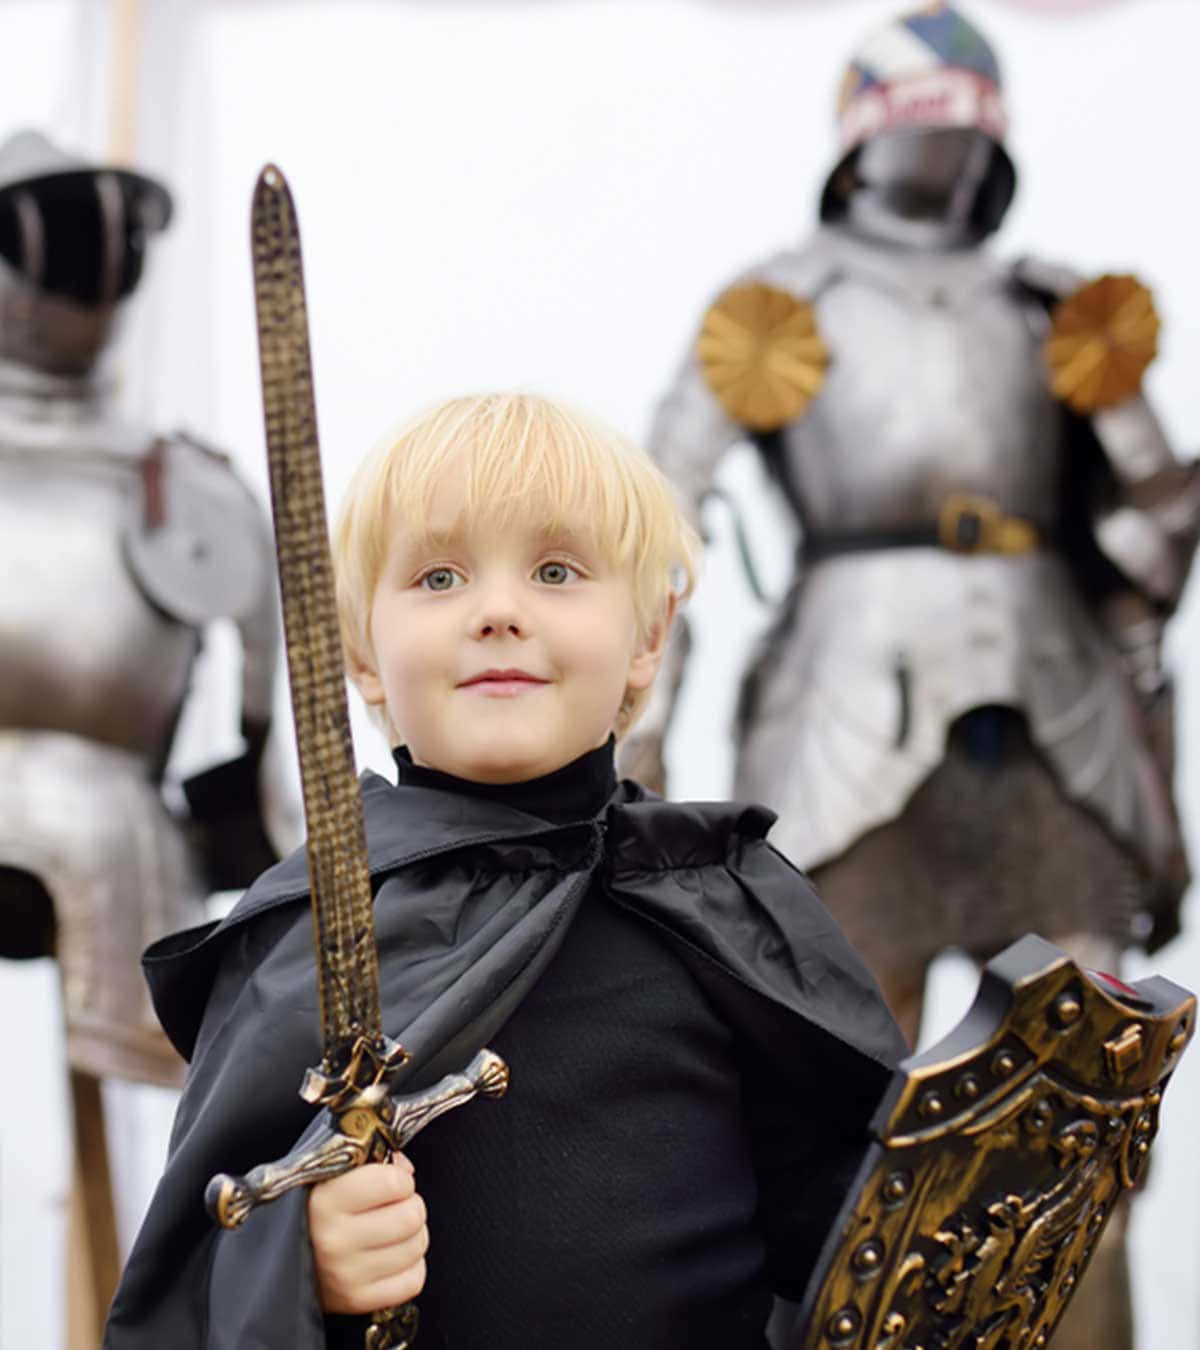 A Boy In A Knight Costume